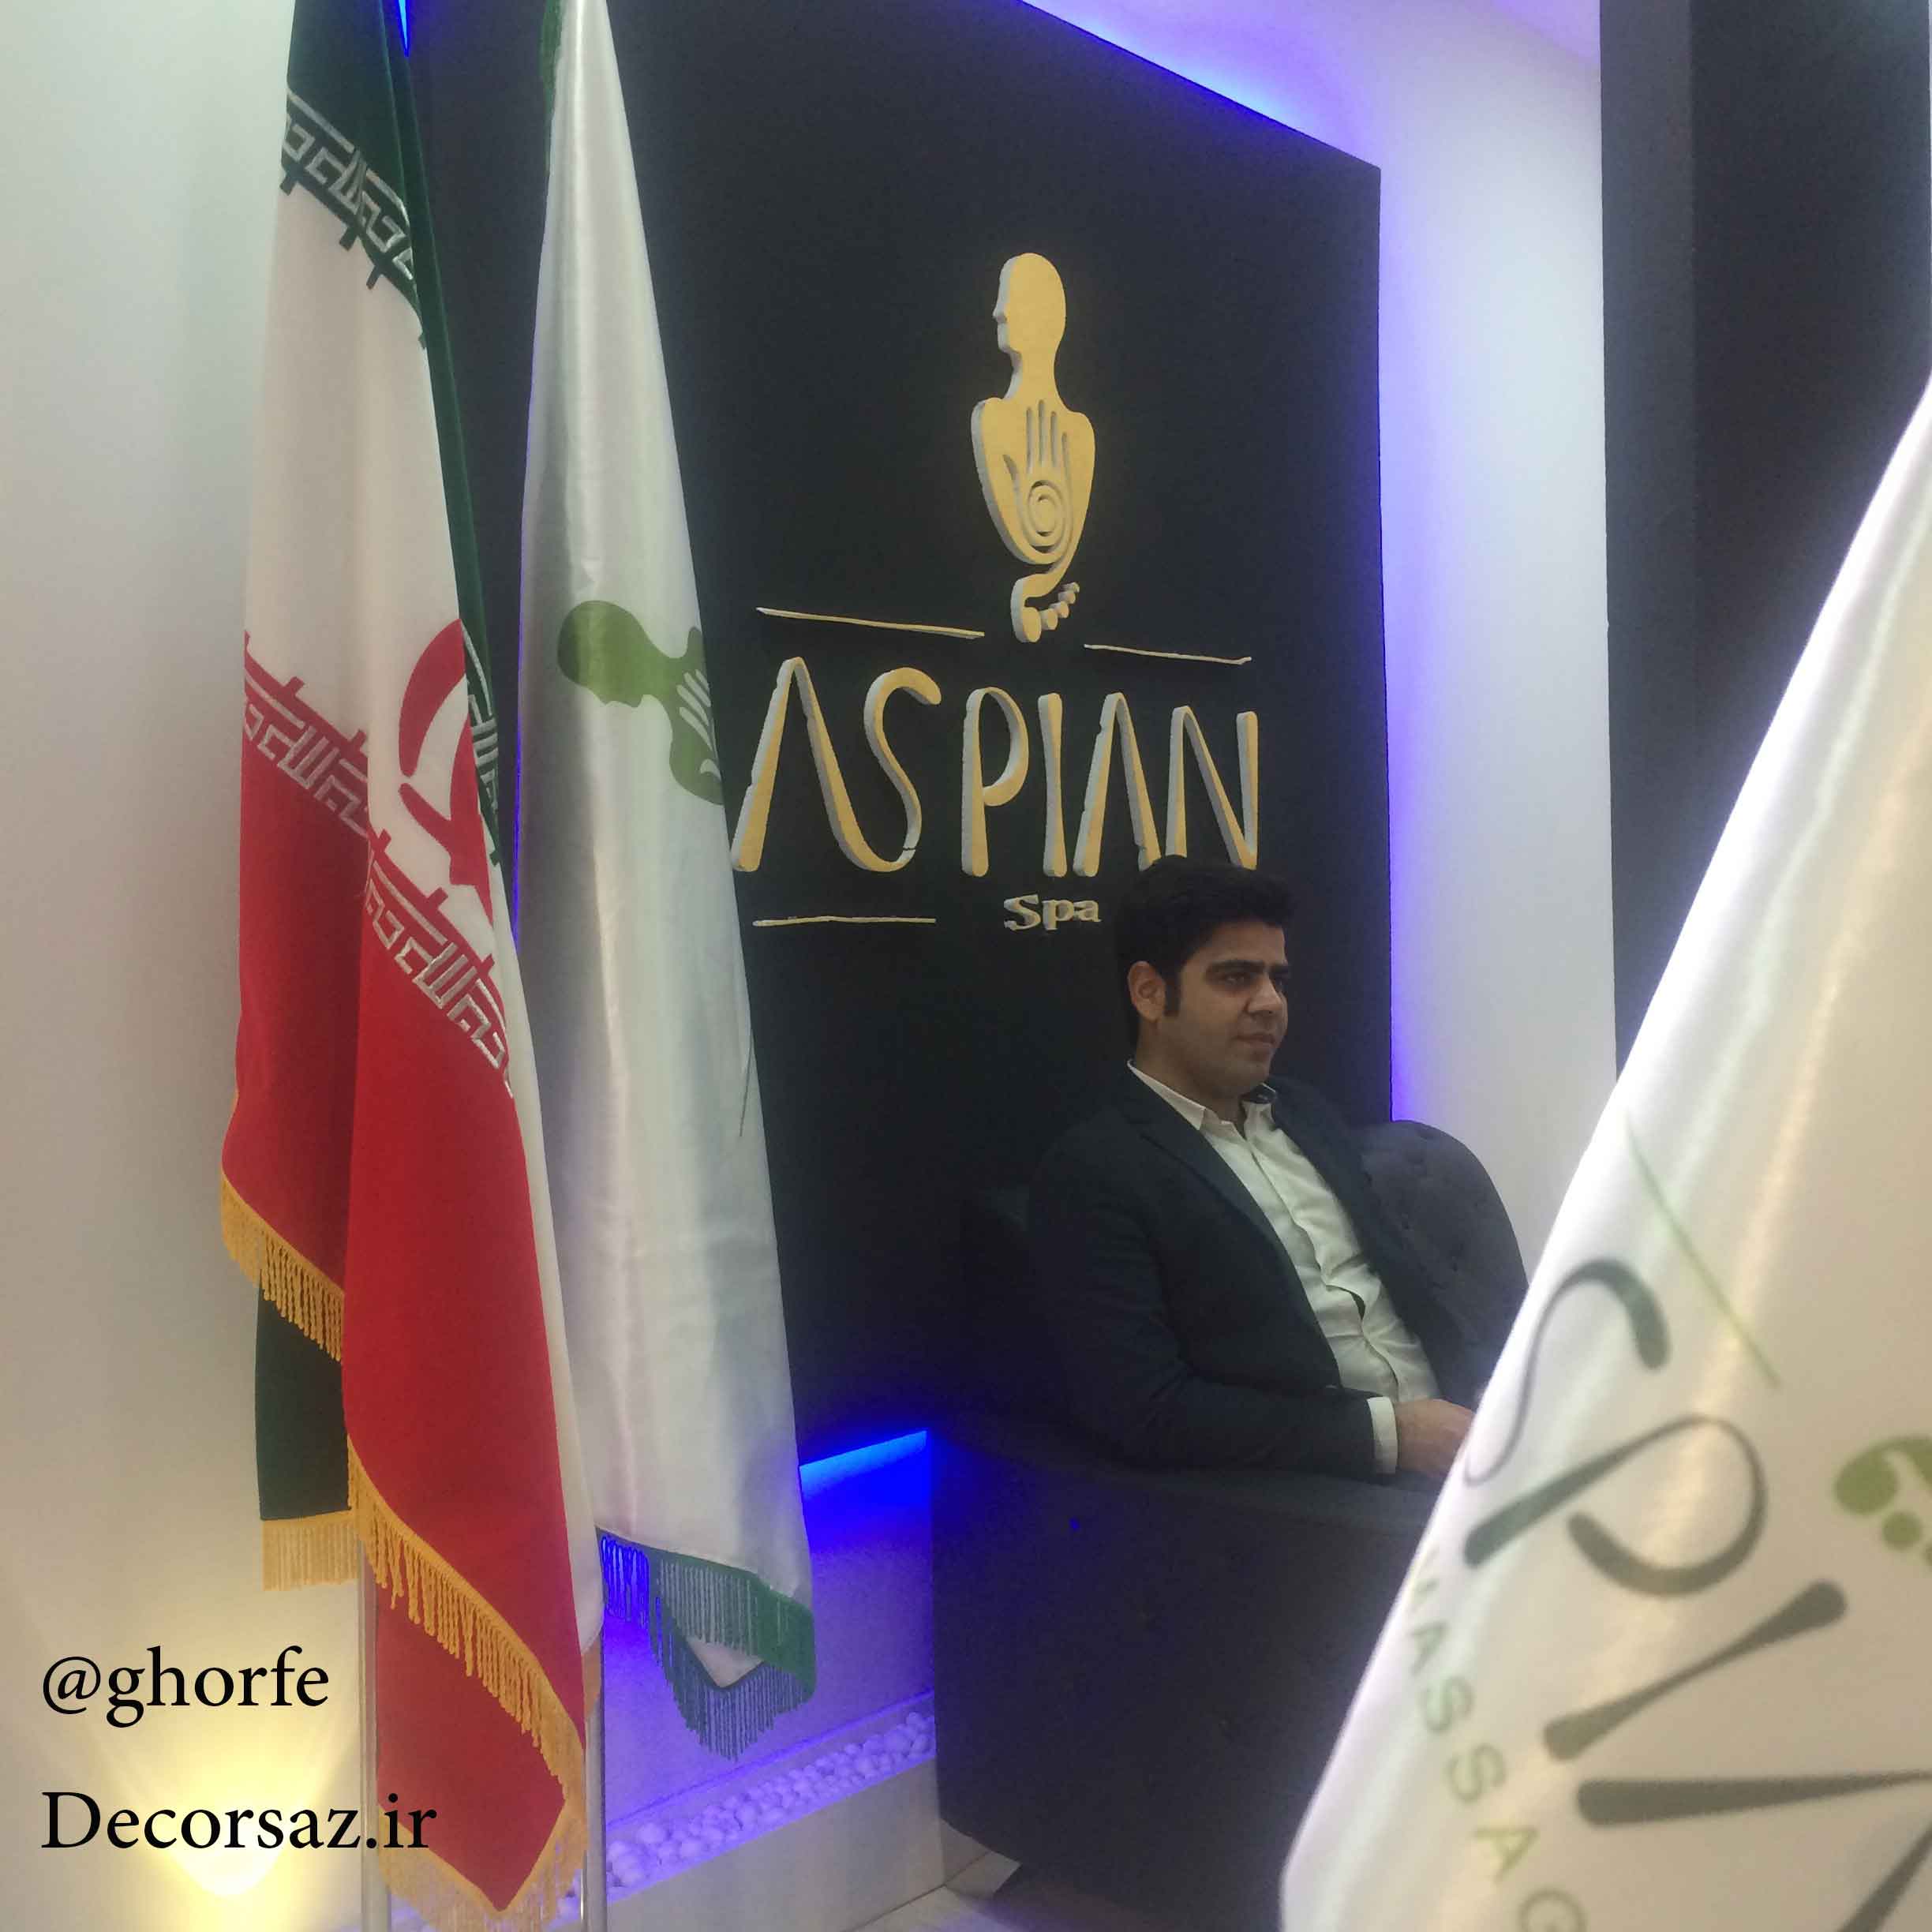 طراحی و اجرای غرفه نمایشگاهی آسپیان اسپا در نمایشگاه بین المللی گردشگری تهران|